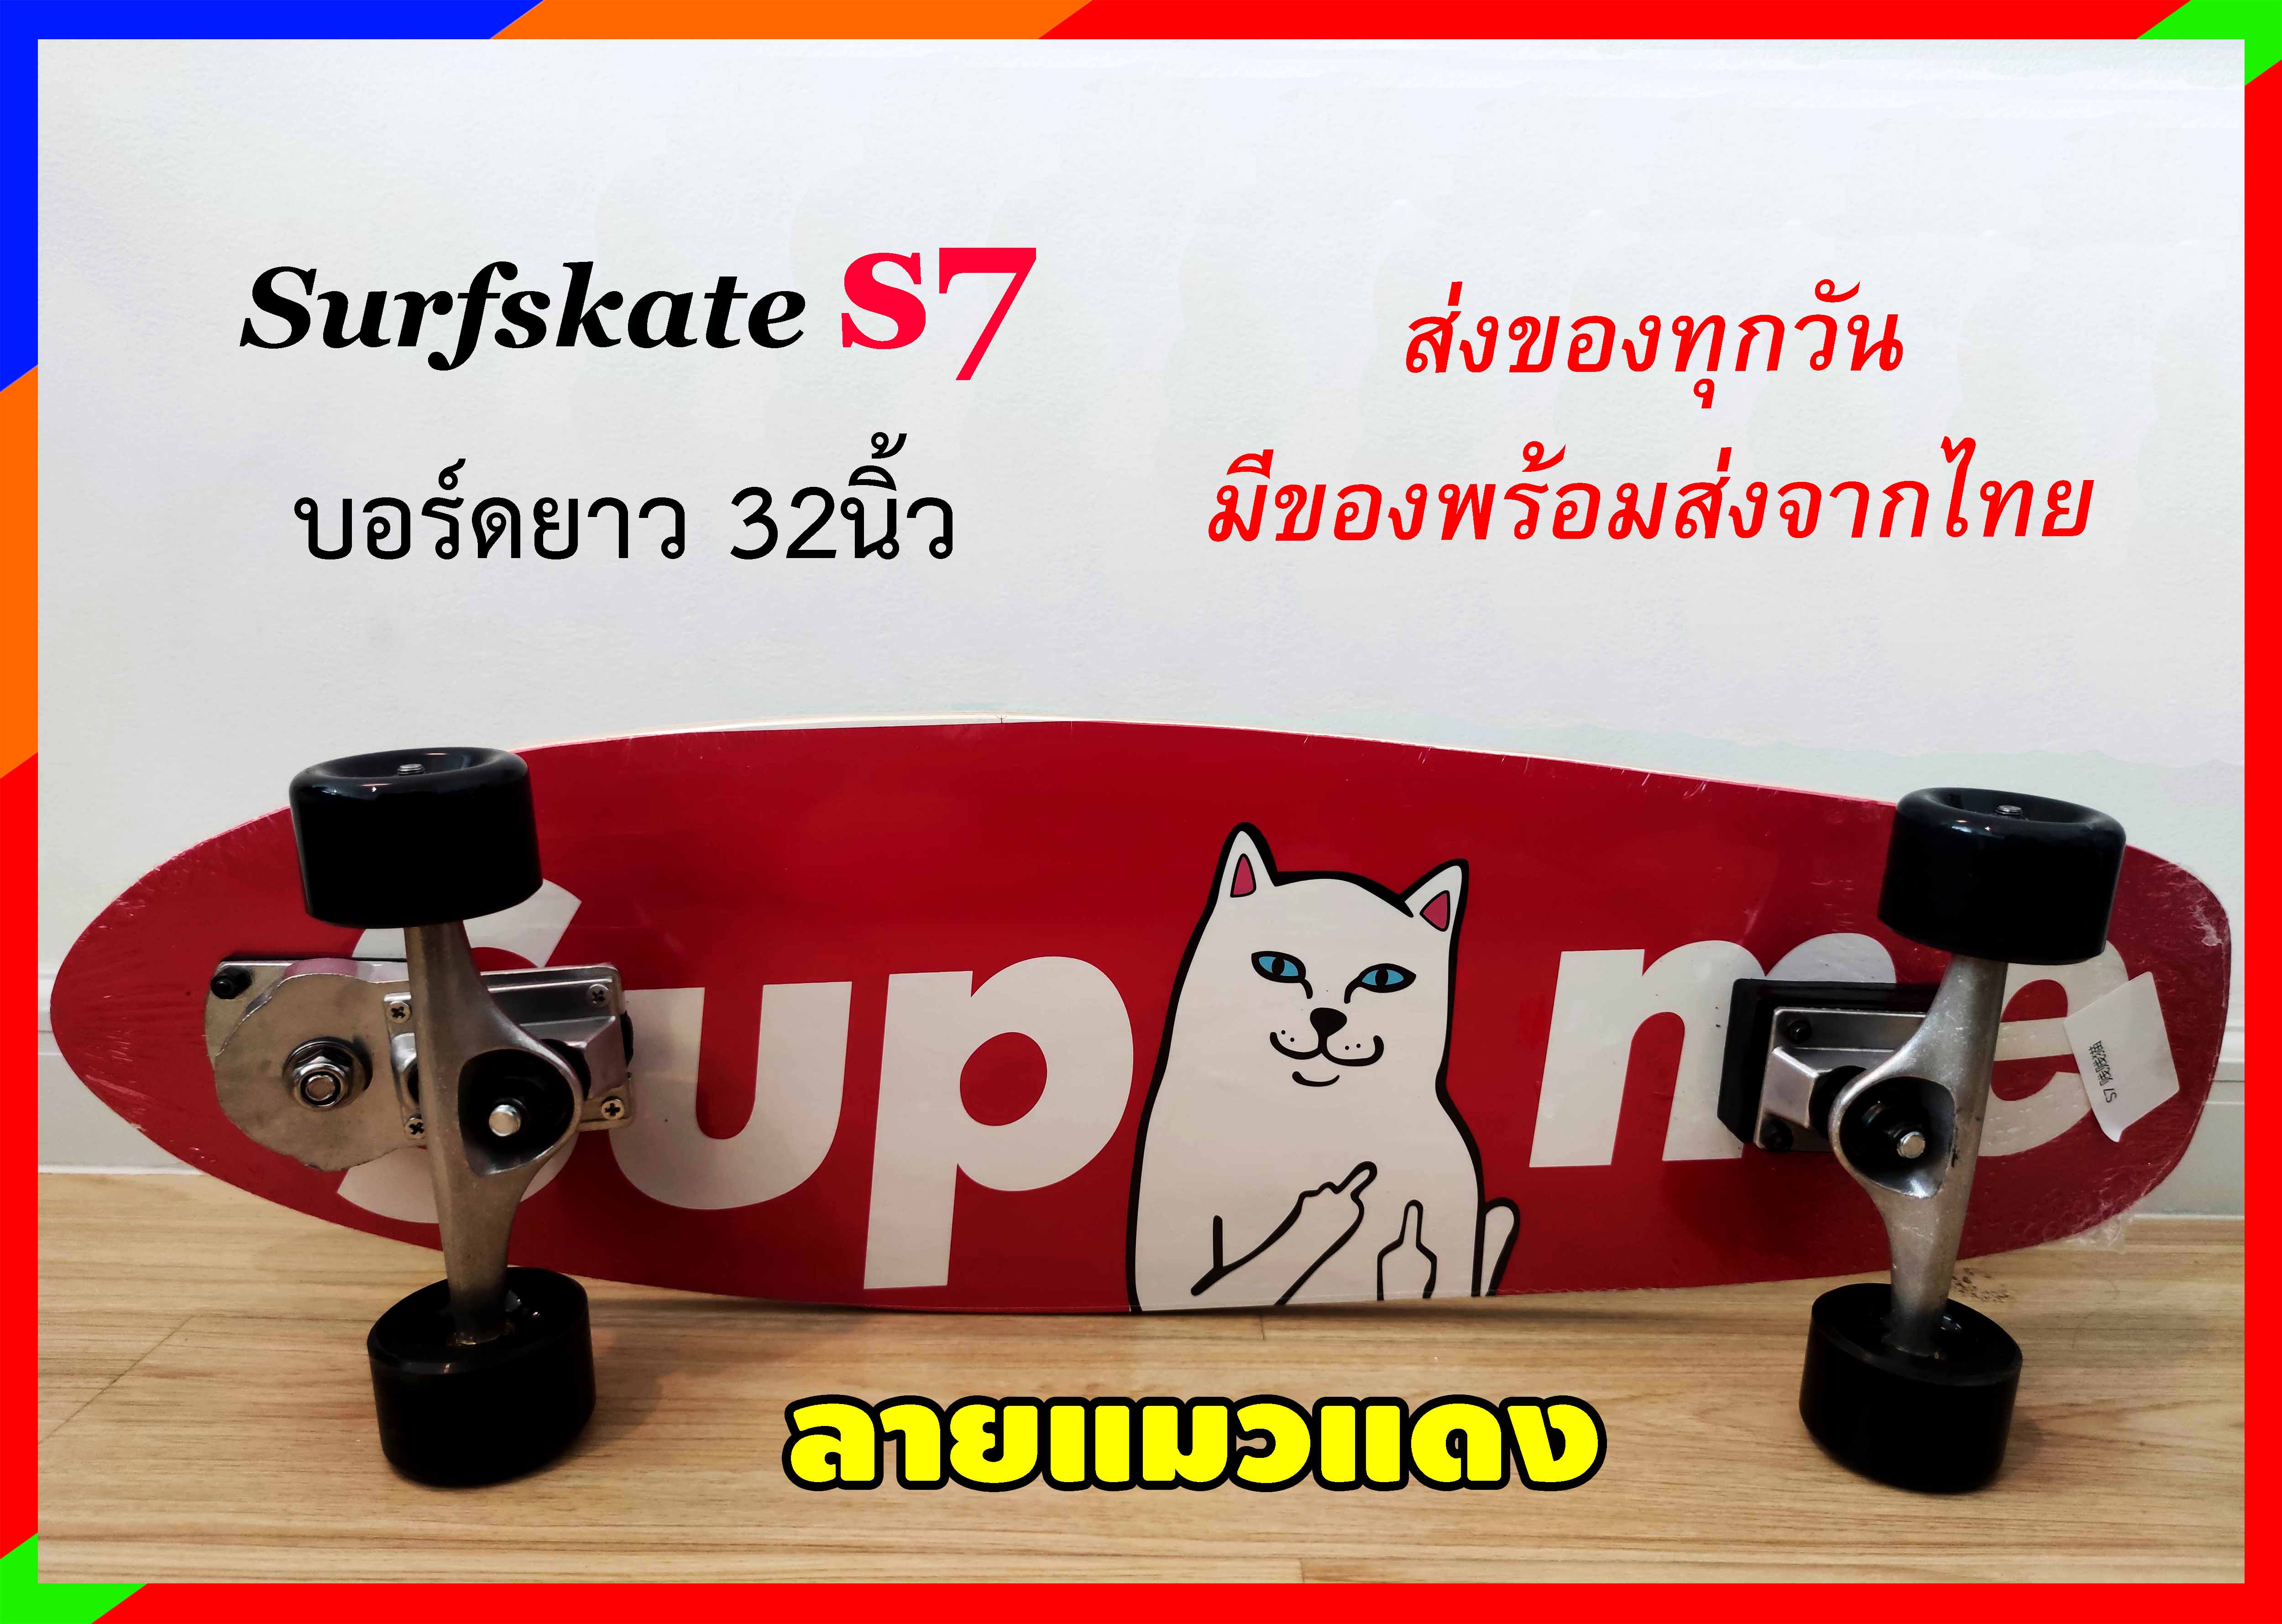 เซิร์ฟสเก็ต Surfskate S7 ขนาด32นิ้ว เซิร์ฟสเก็ตรุ่นใหม่ พร้อมส่งจากไทย Seething Surfskate Toy108 เซิร์ฟสเก็ต สเก็ตบอร์ด Skateboard. 